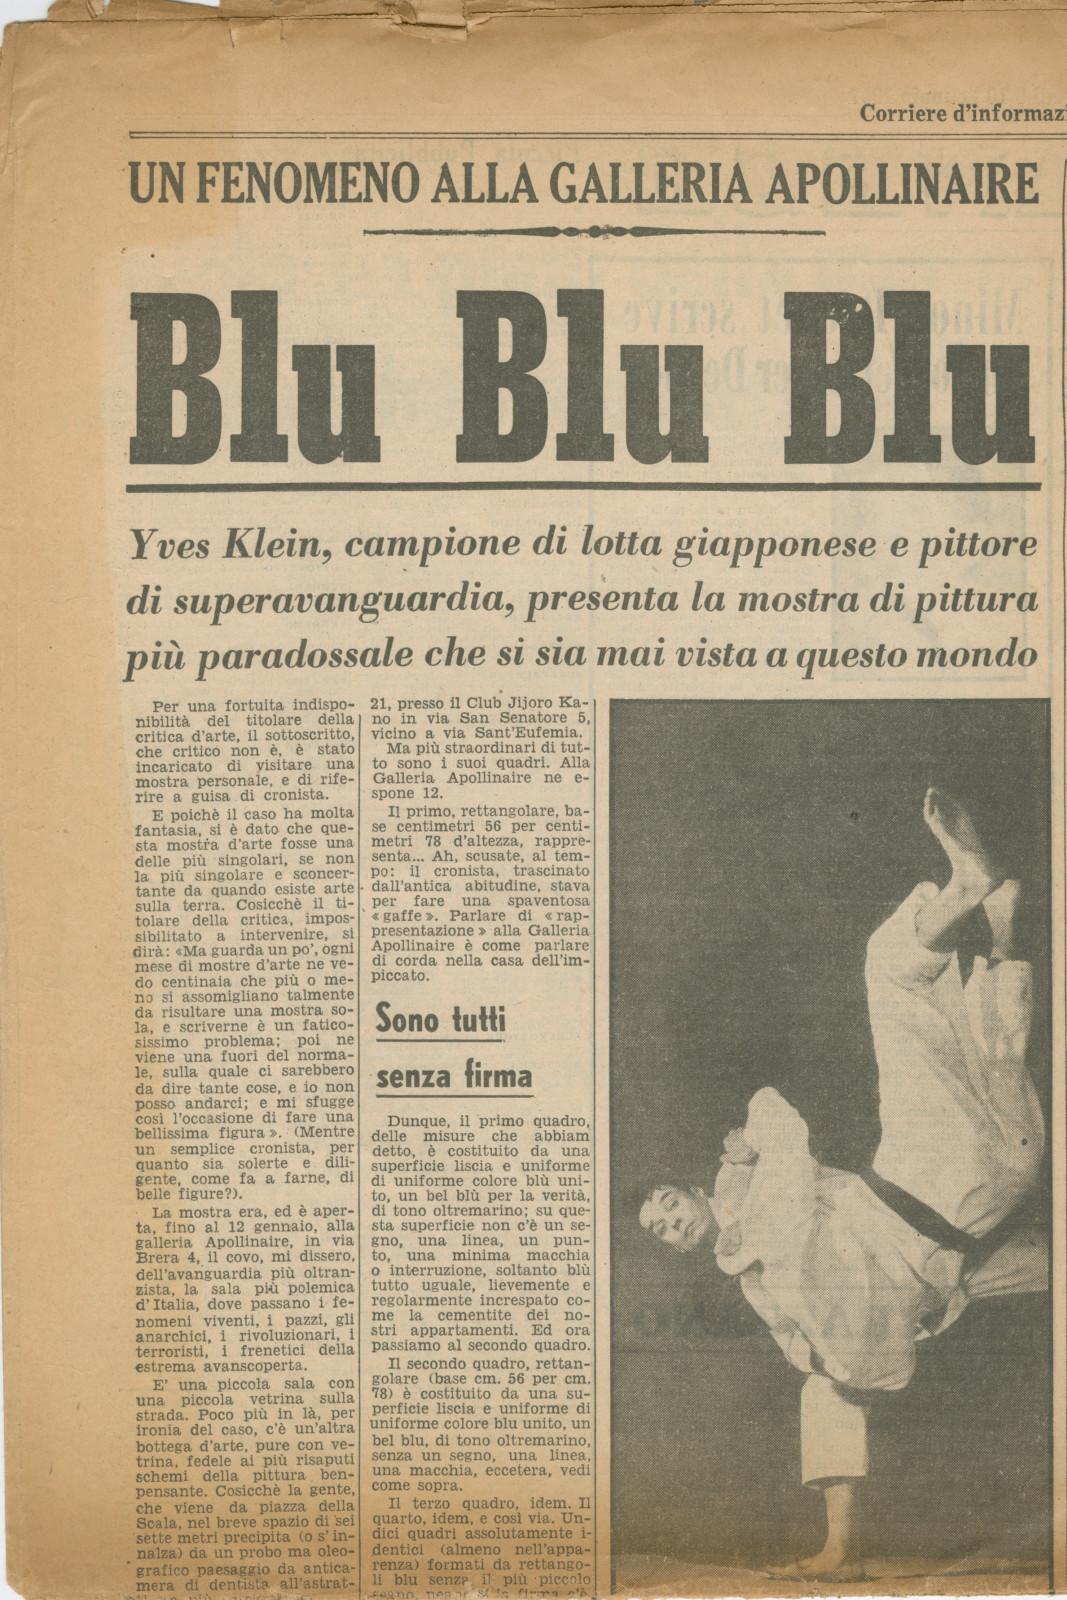 "Blu Blu Blu, Un fenomeno alla Galleria Apollinaire", article by Dino Buzzati